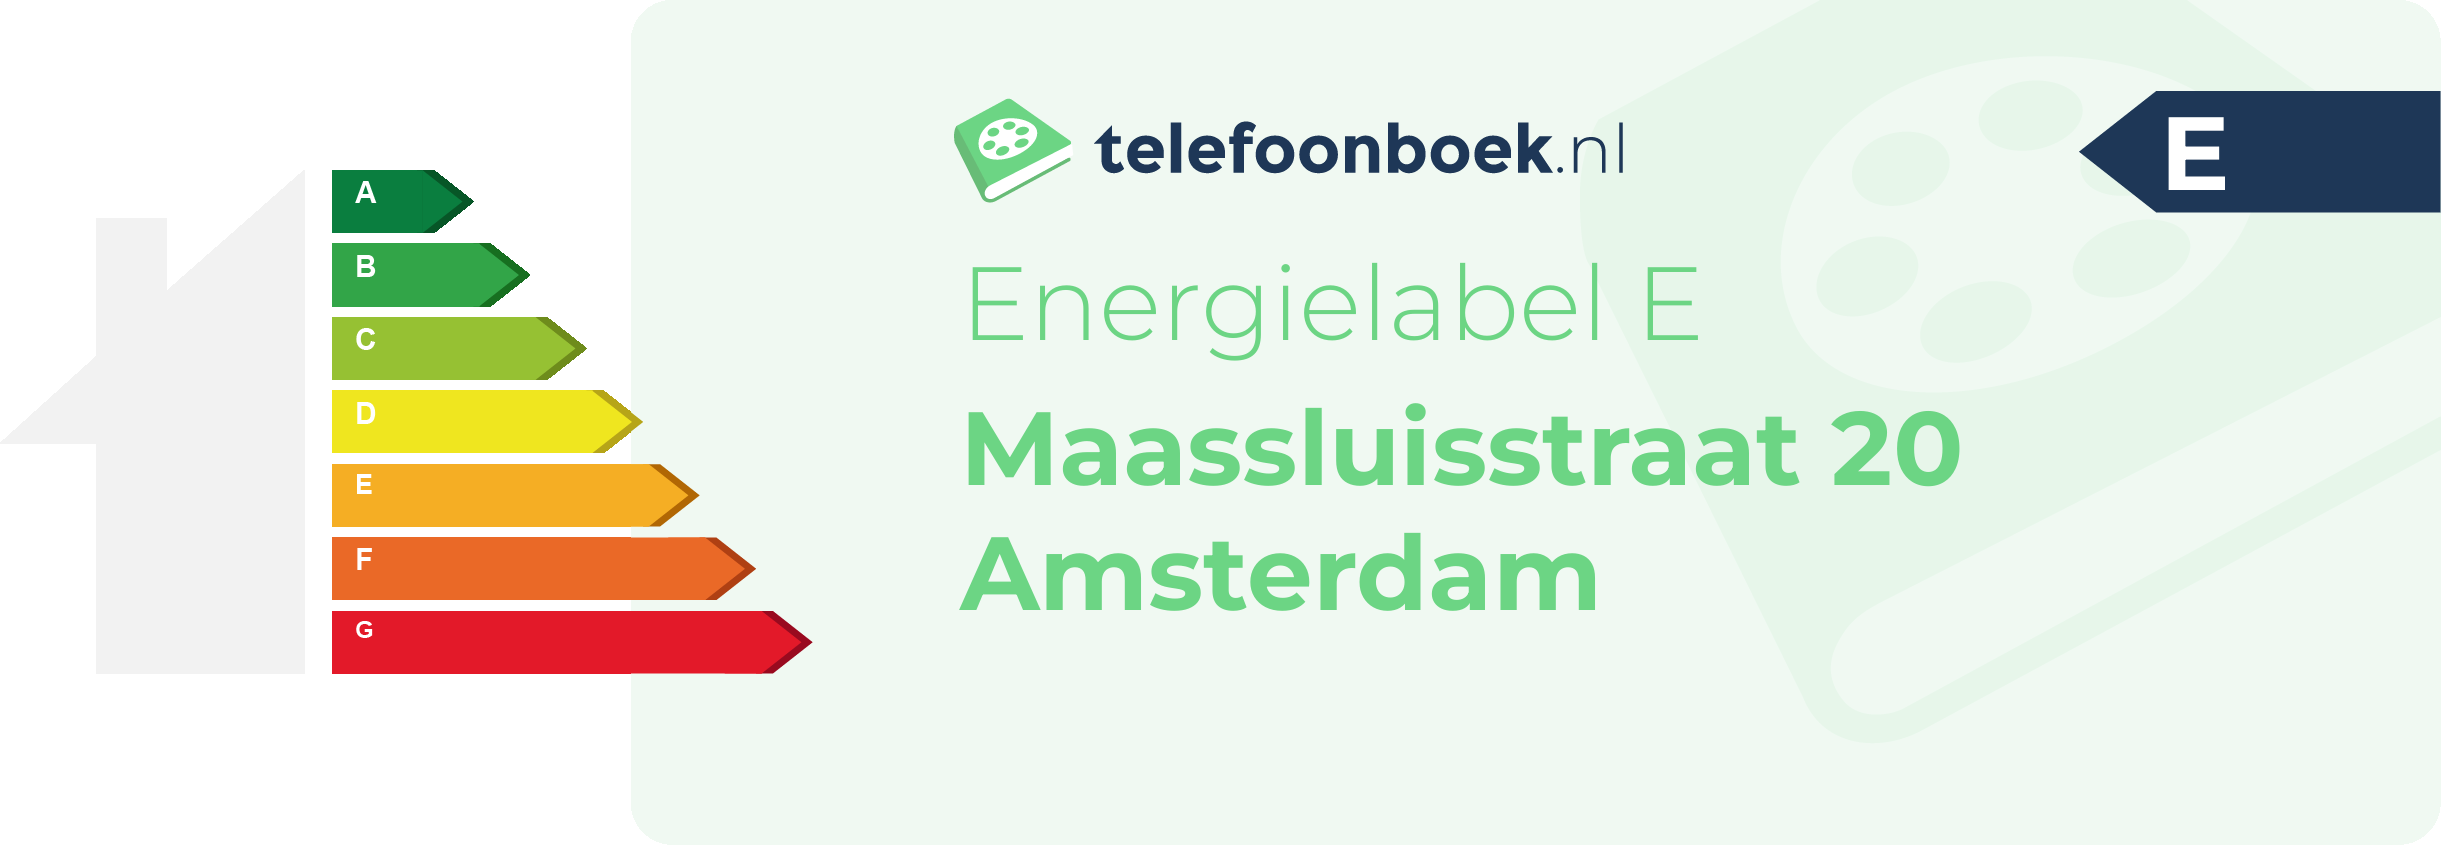 Energielabel Maassluisstraat 20 Amsterdam